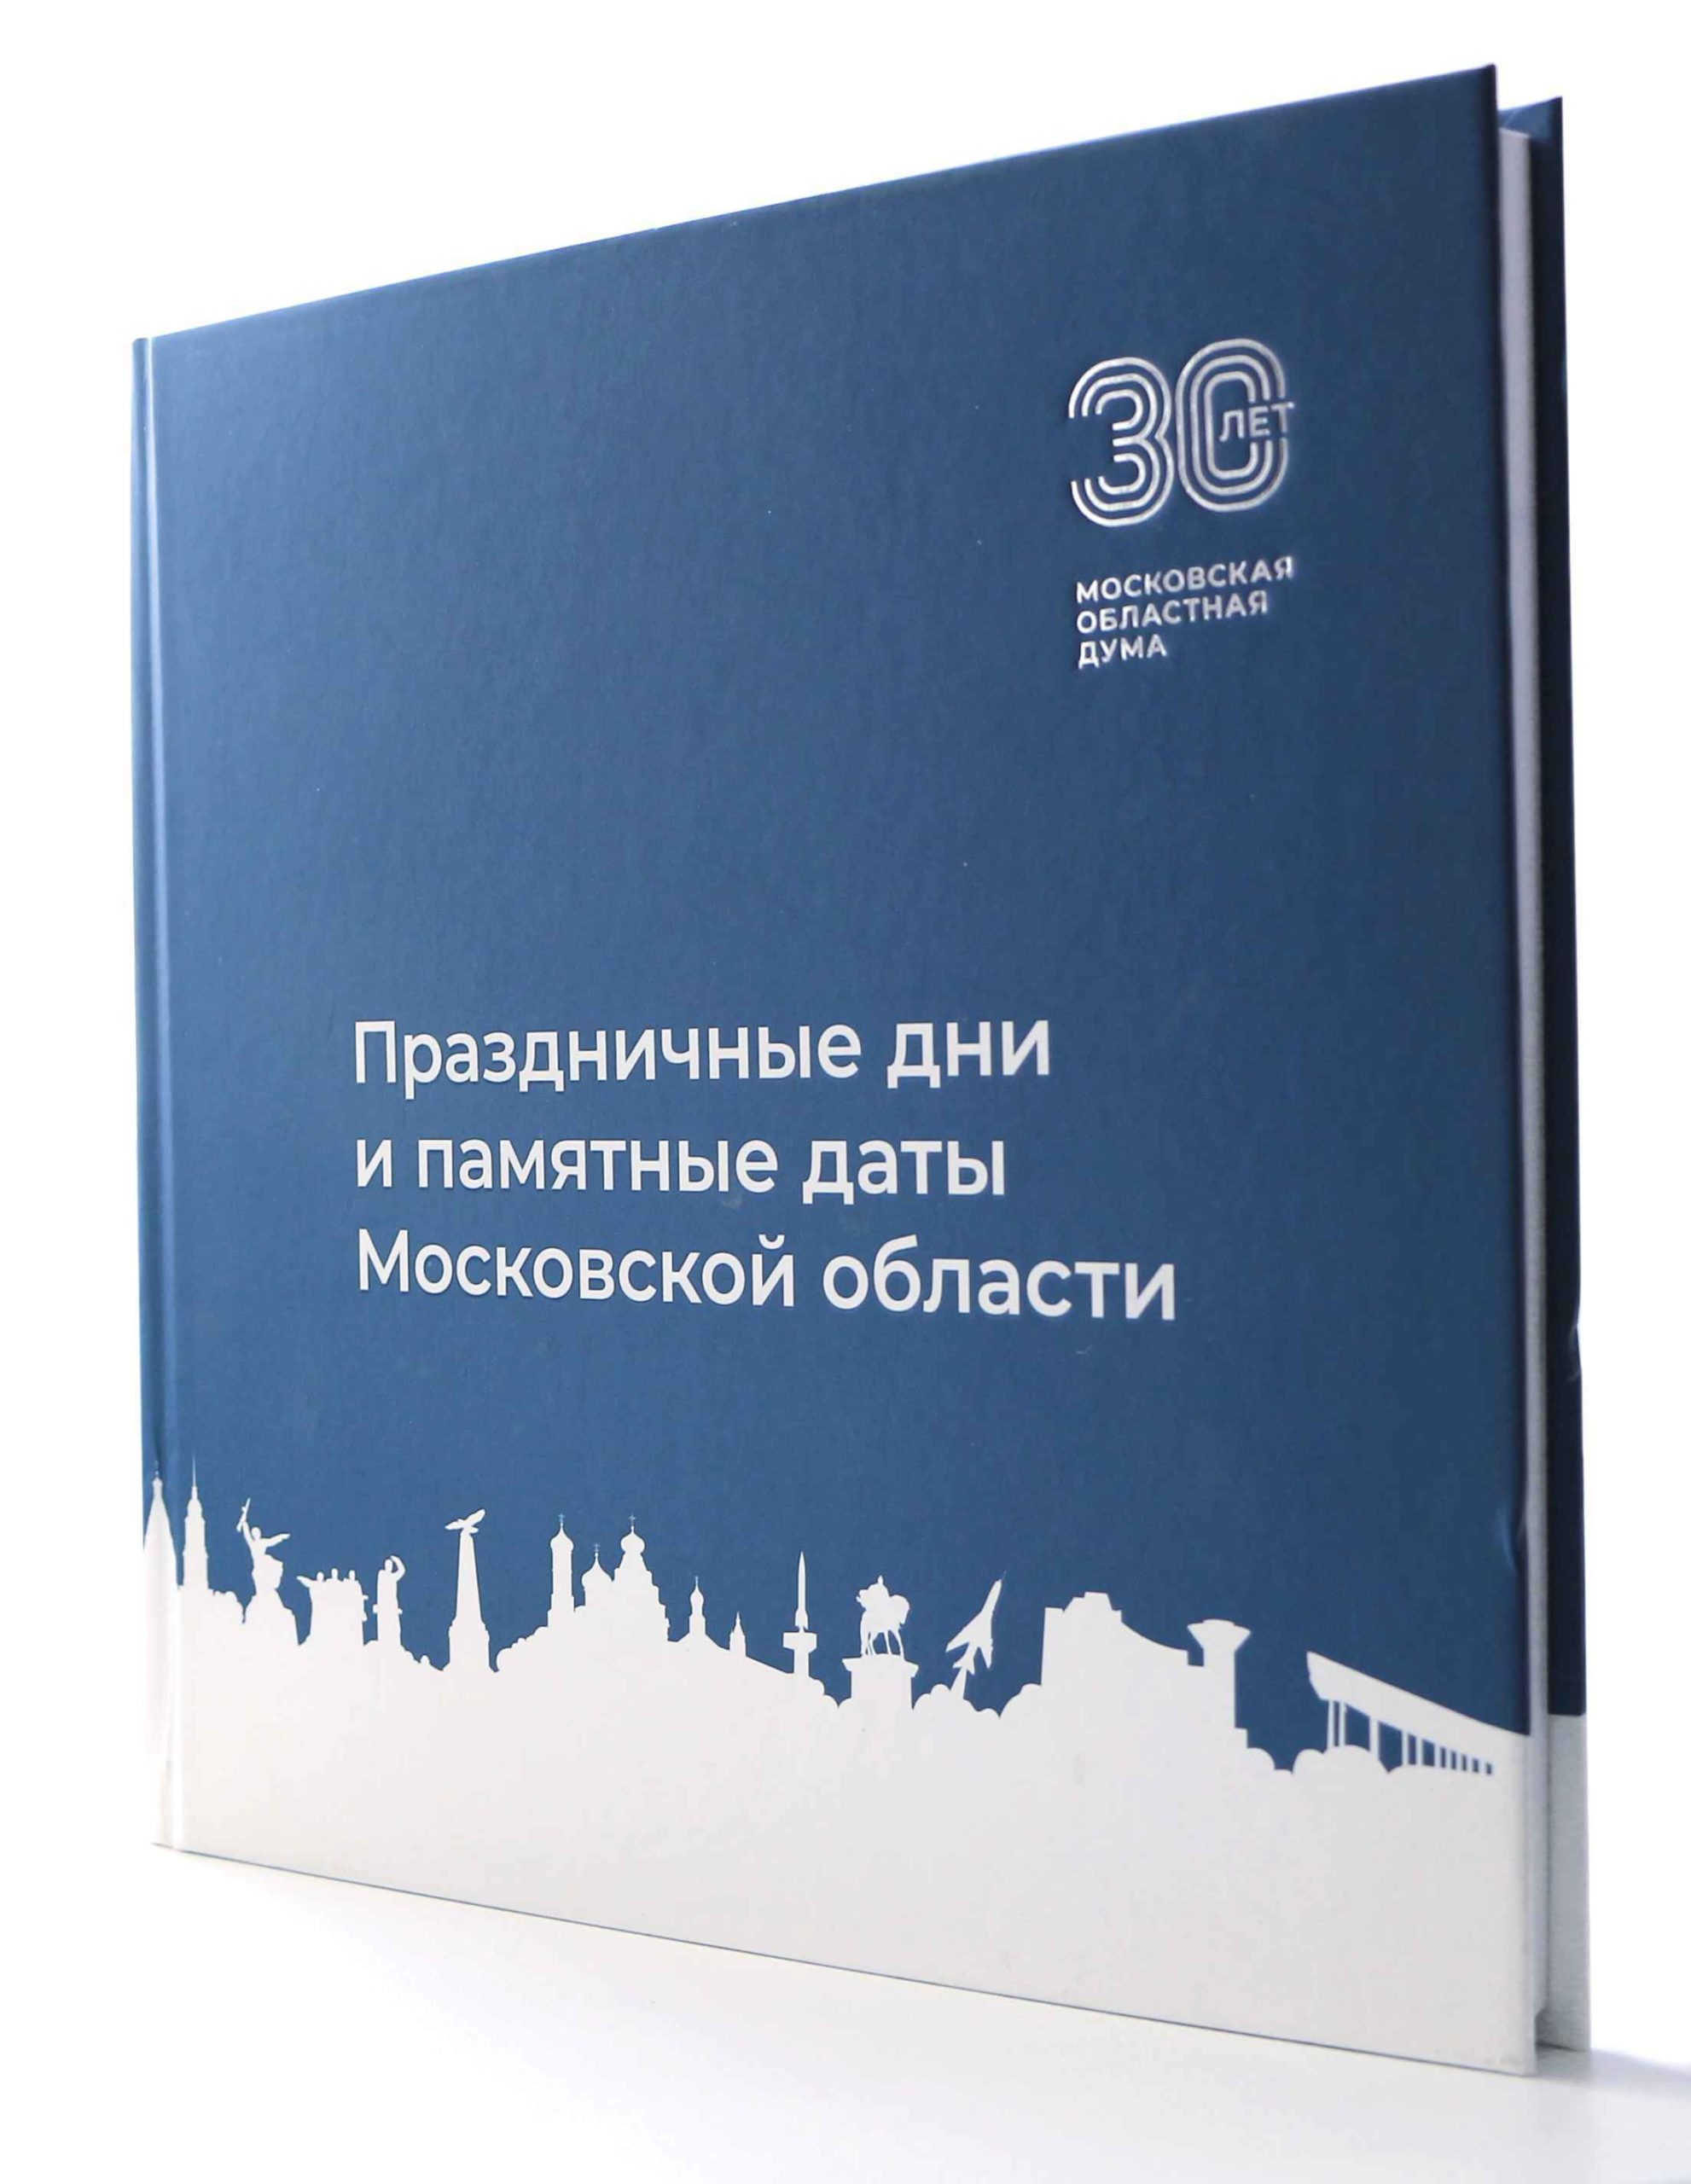 30 лет Московской областной думе